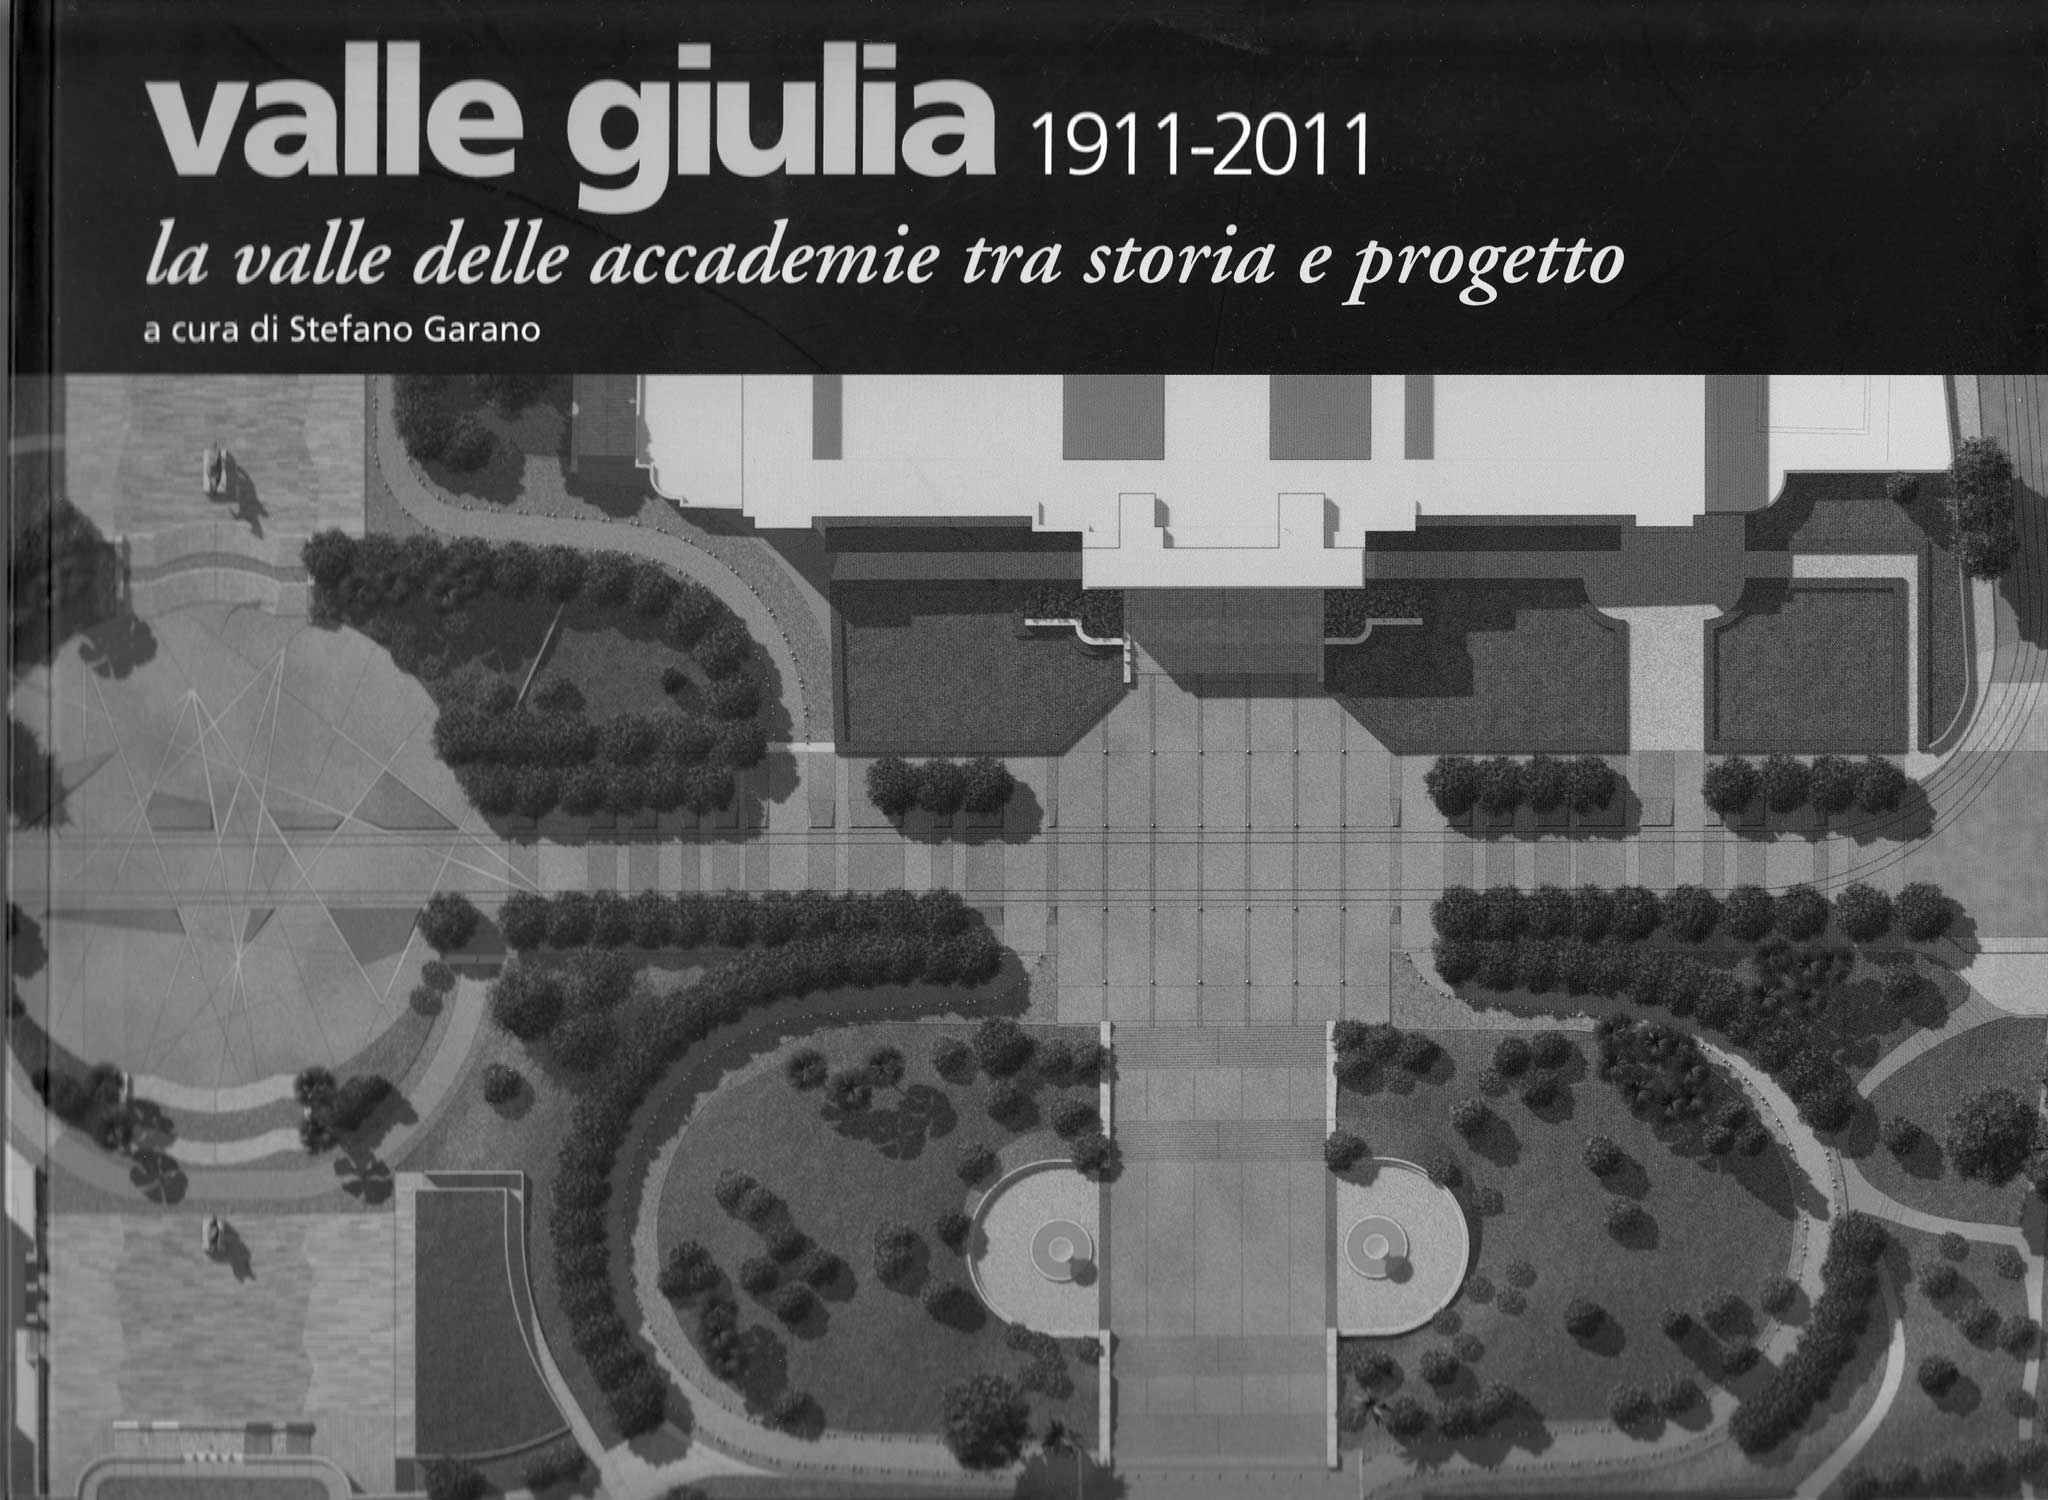 14 - Valle Giulia 1911-2011 la valle delle accademie tra storia e progetto, Fratelli Palombi Editori, Roma - Copertina